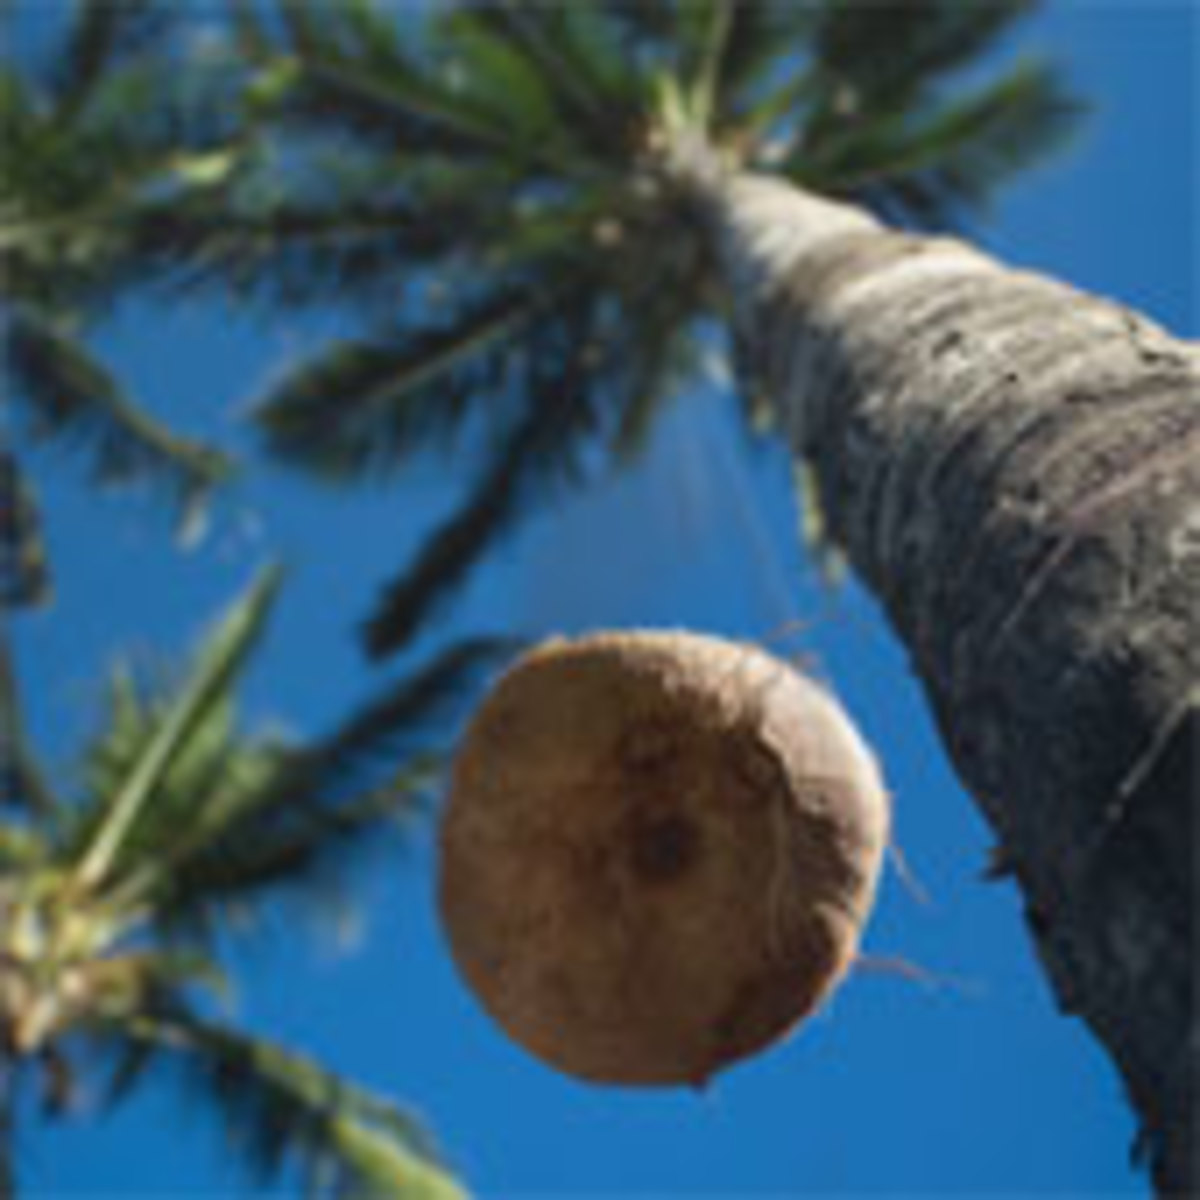 Mature coconut